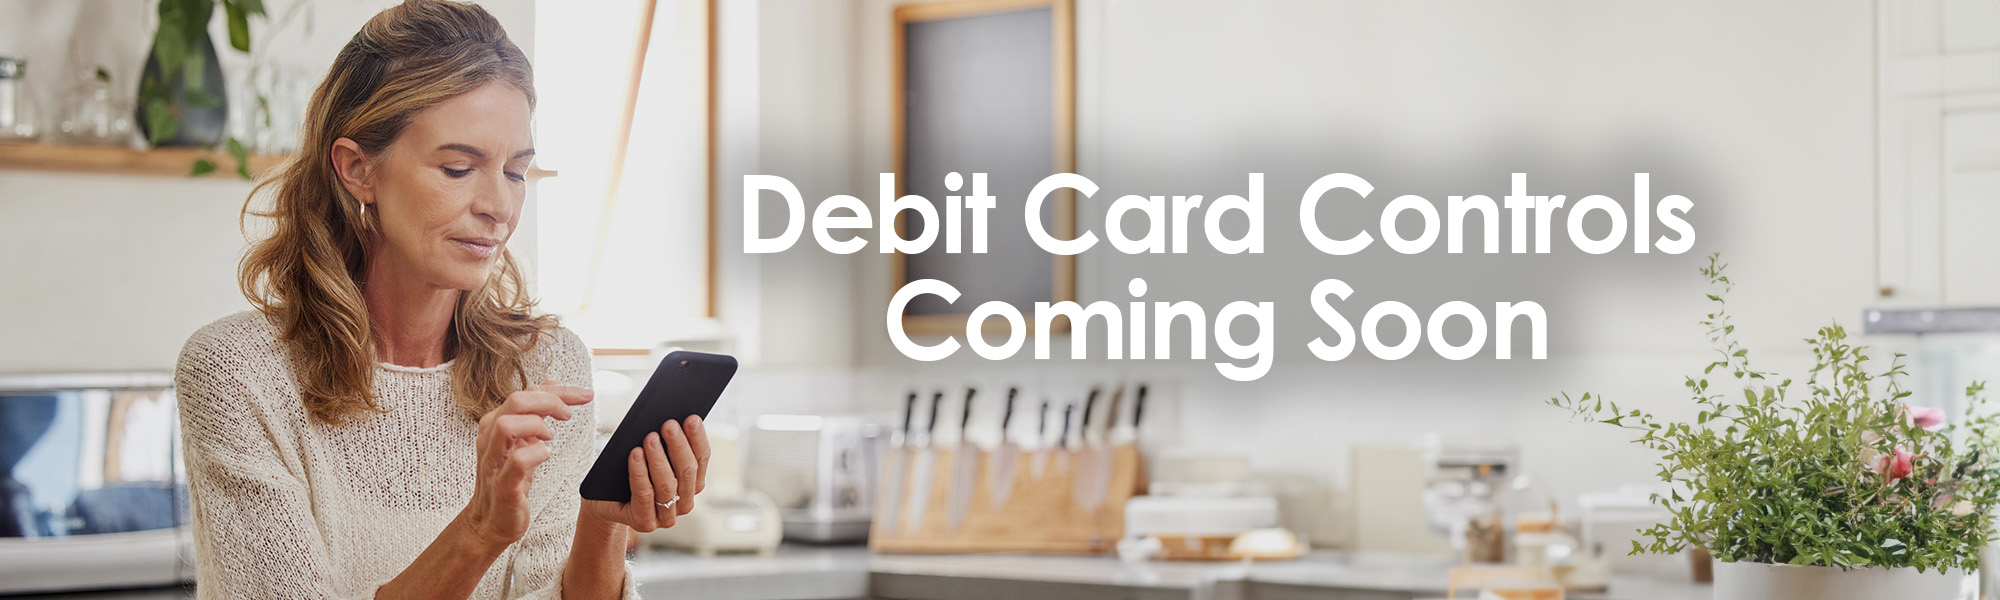 Debit Card Controls